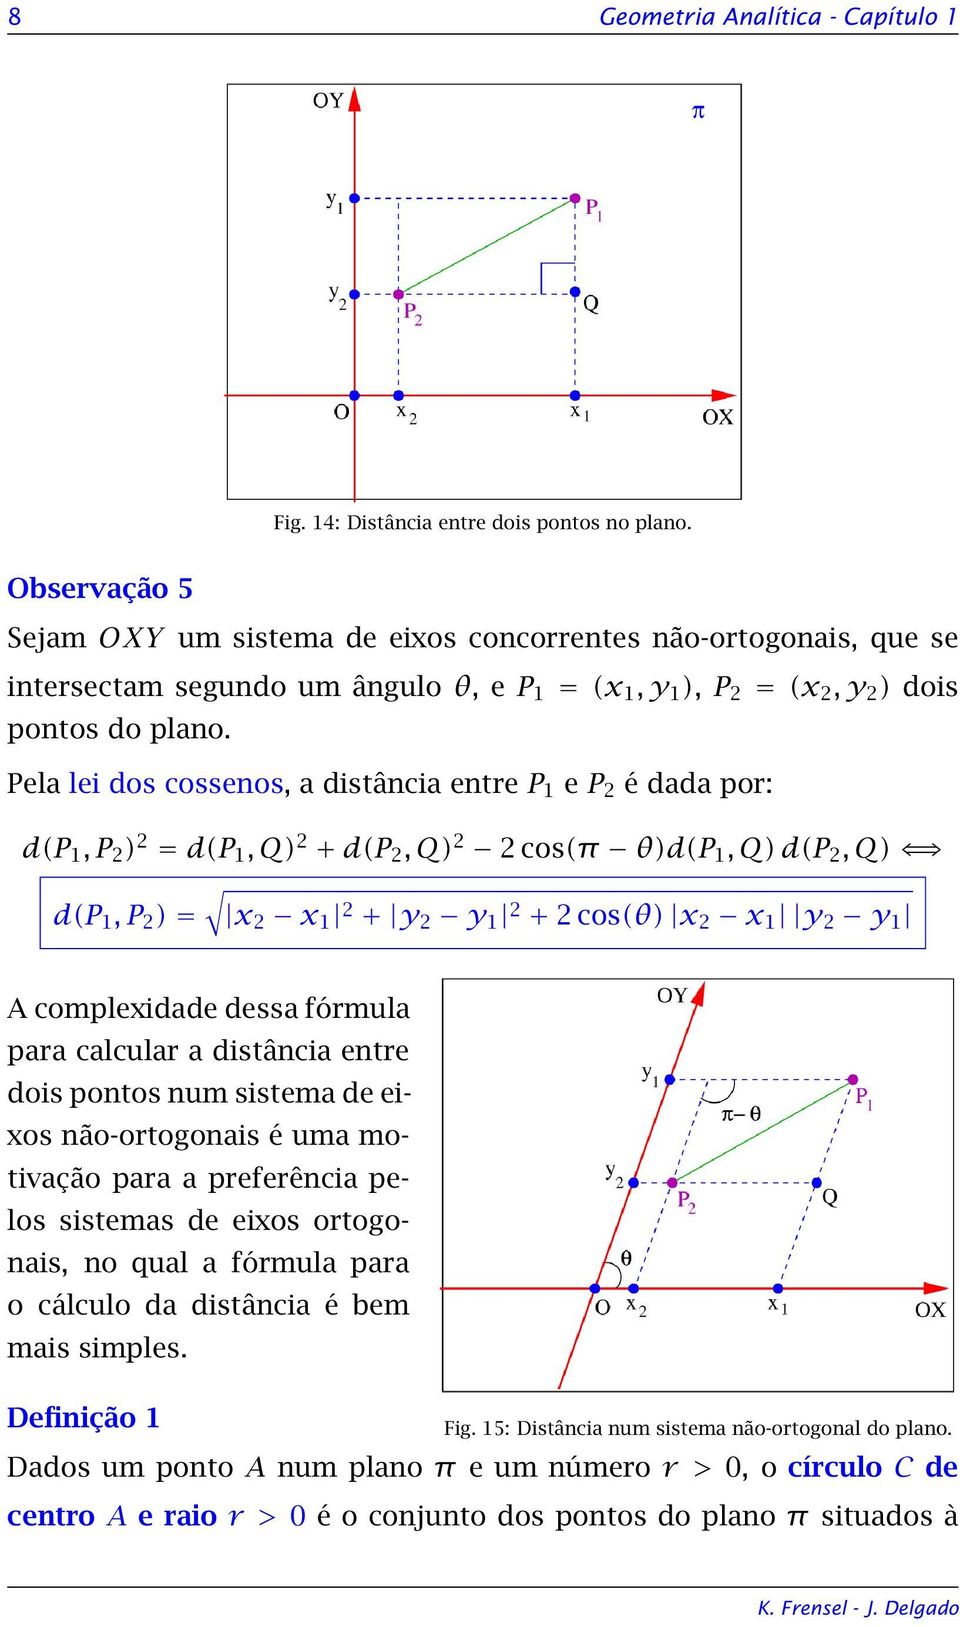 Pela lei dos cossenos, a distância entre P 1 e P é dada por: d(p 1, P ) = d(p 1, Q) + d(p, Q) cos(π θ)d(p 1, Q) d(p, Q) d(p 1, P ) = x x 1 + y y 1 + cos(θ) x x 1 y y 1 A complexidade dessa fórmula